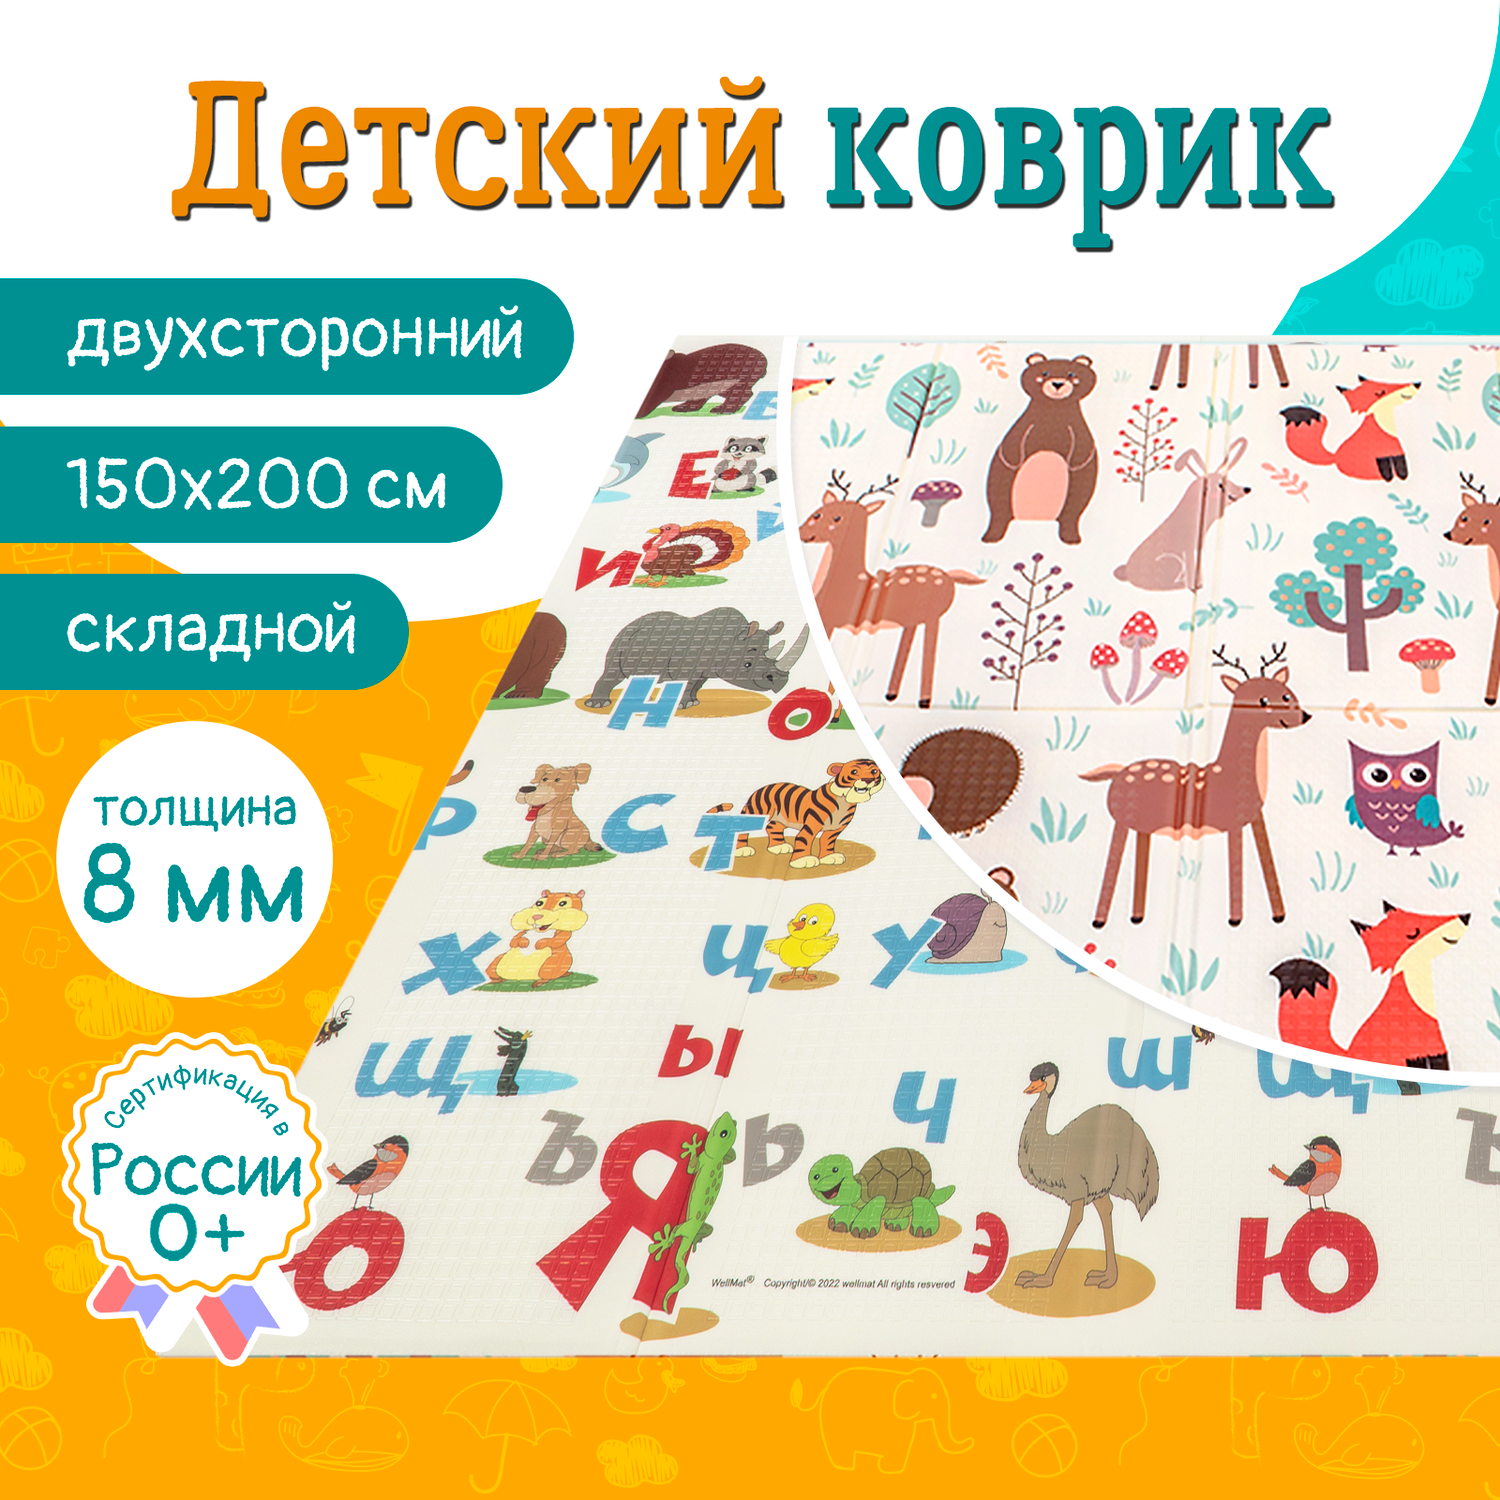 Коврик детский WellMat для ползания 150x200 Premium Русский алфавит/Сказочный лес складной развивающий - фото 1